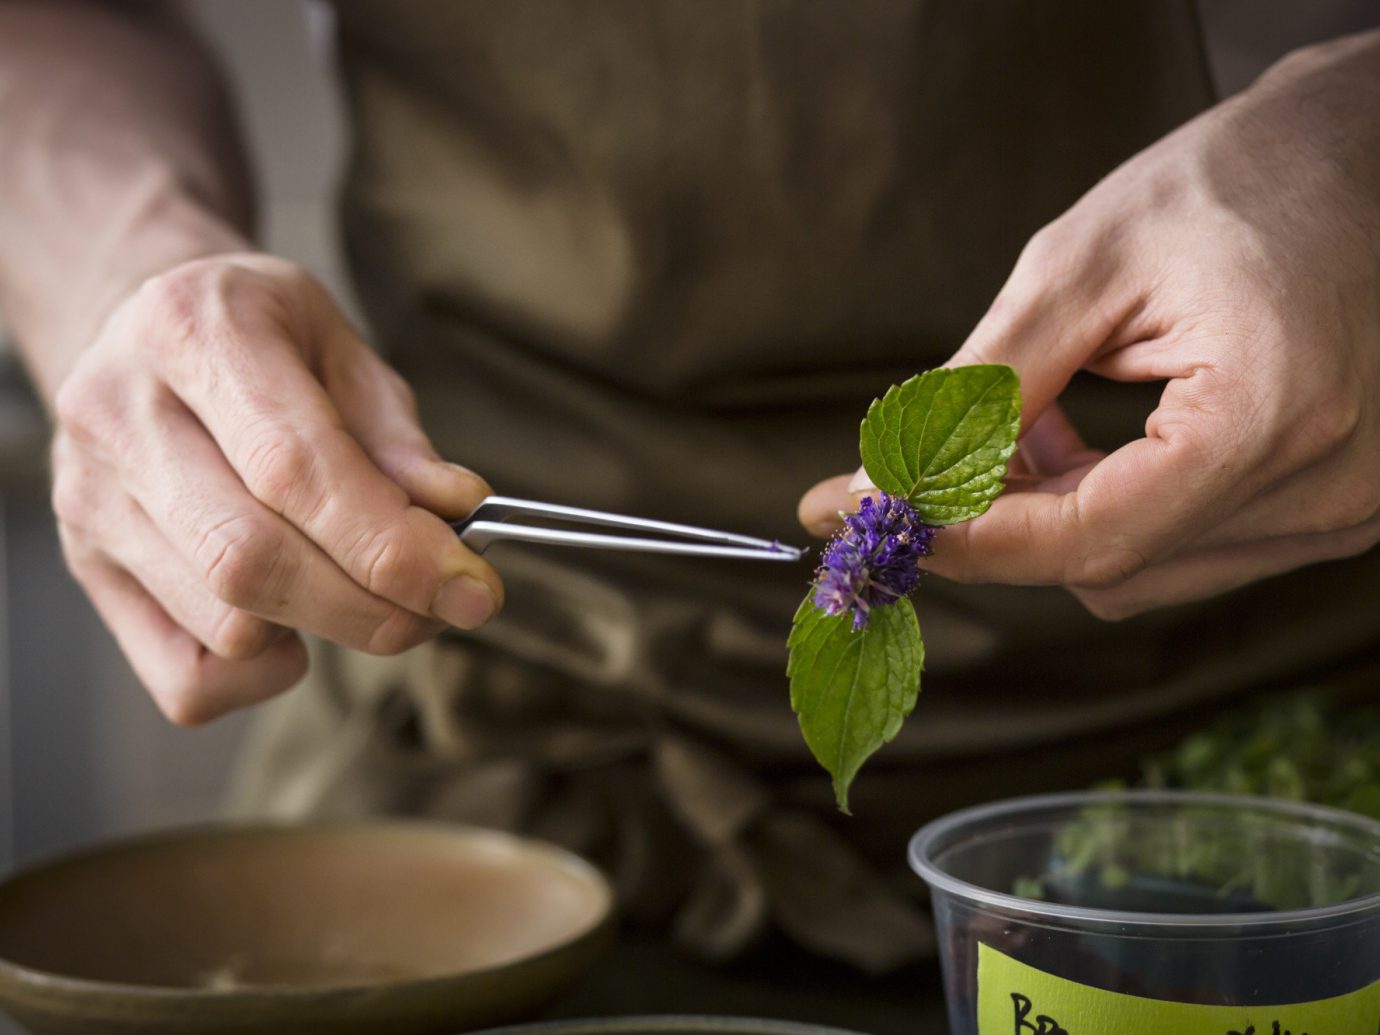 person indoor food plant produce flower hand Drink beverage sense baking preparing tableware bowl